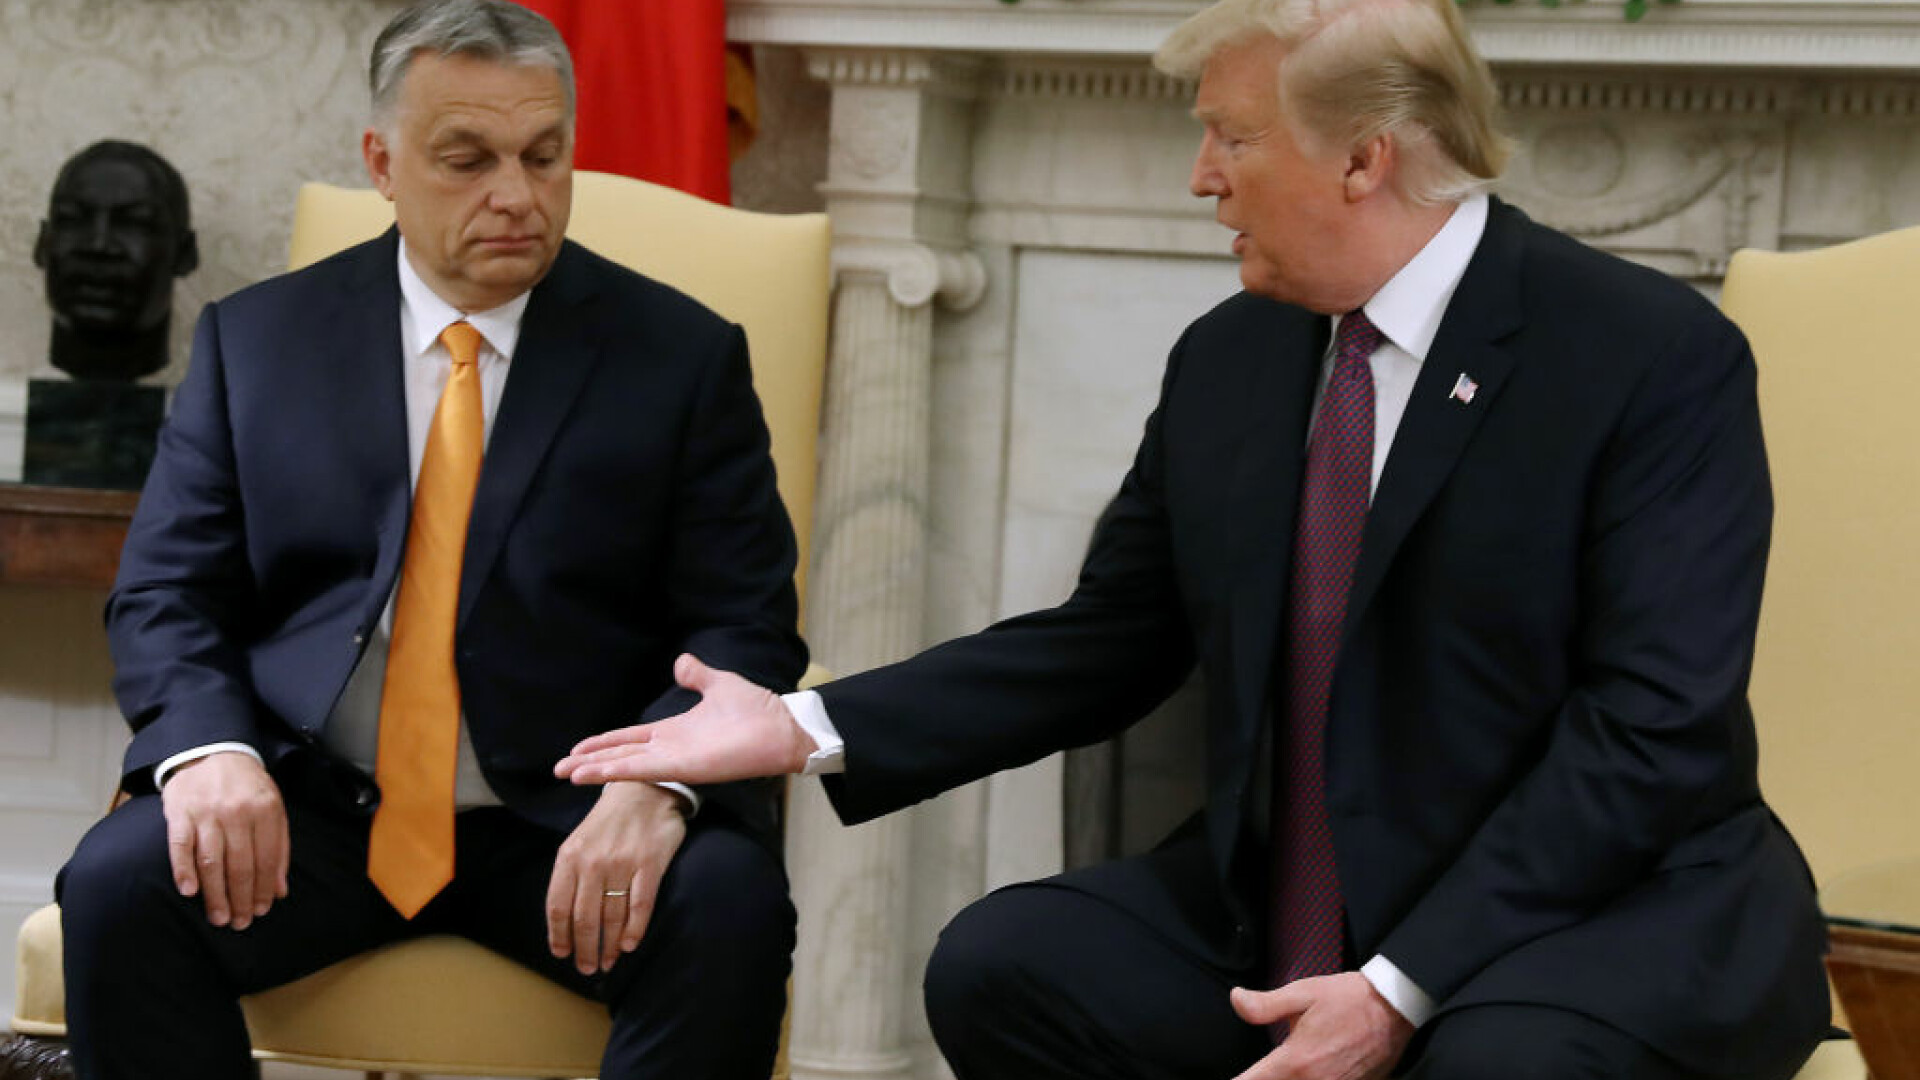 Viktor Orban îi ține pumnii lui Donald Trump la alegeri. ”Relație aproape de prietenie”